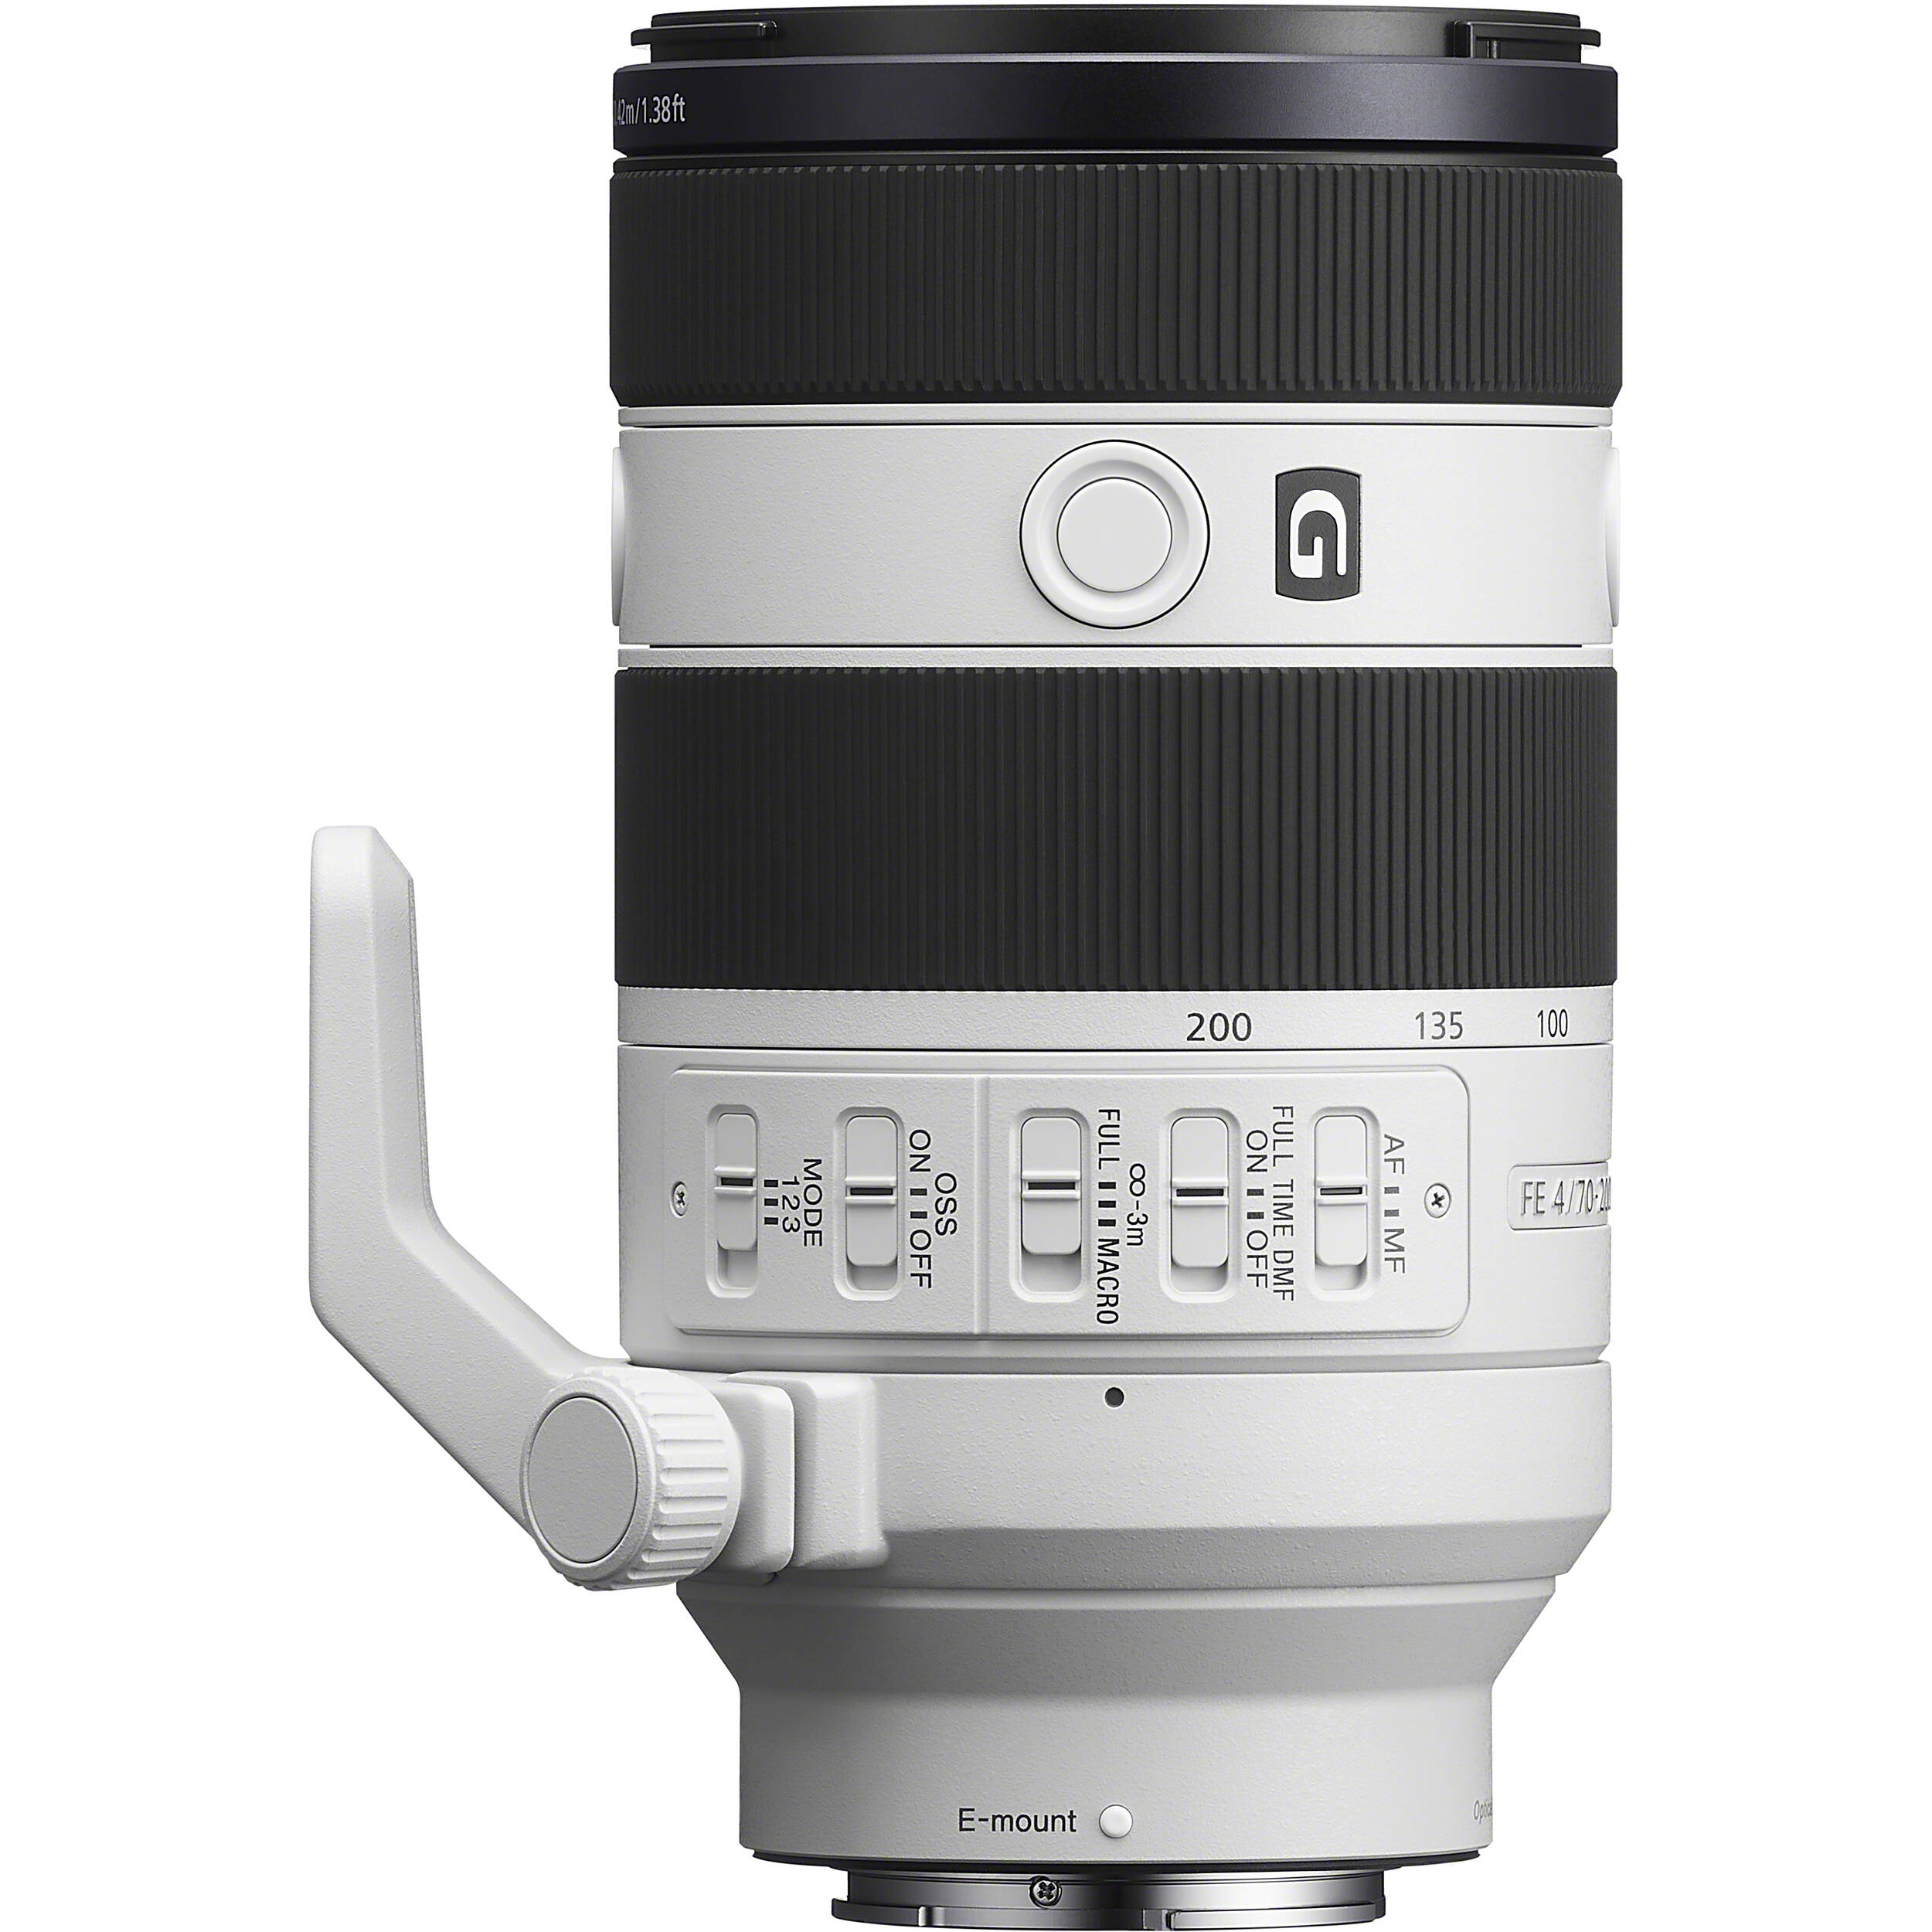 Ống kính Sony FE 70-200mm f/4 Macro G OSS II (Chính hãng)